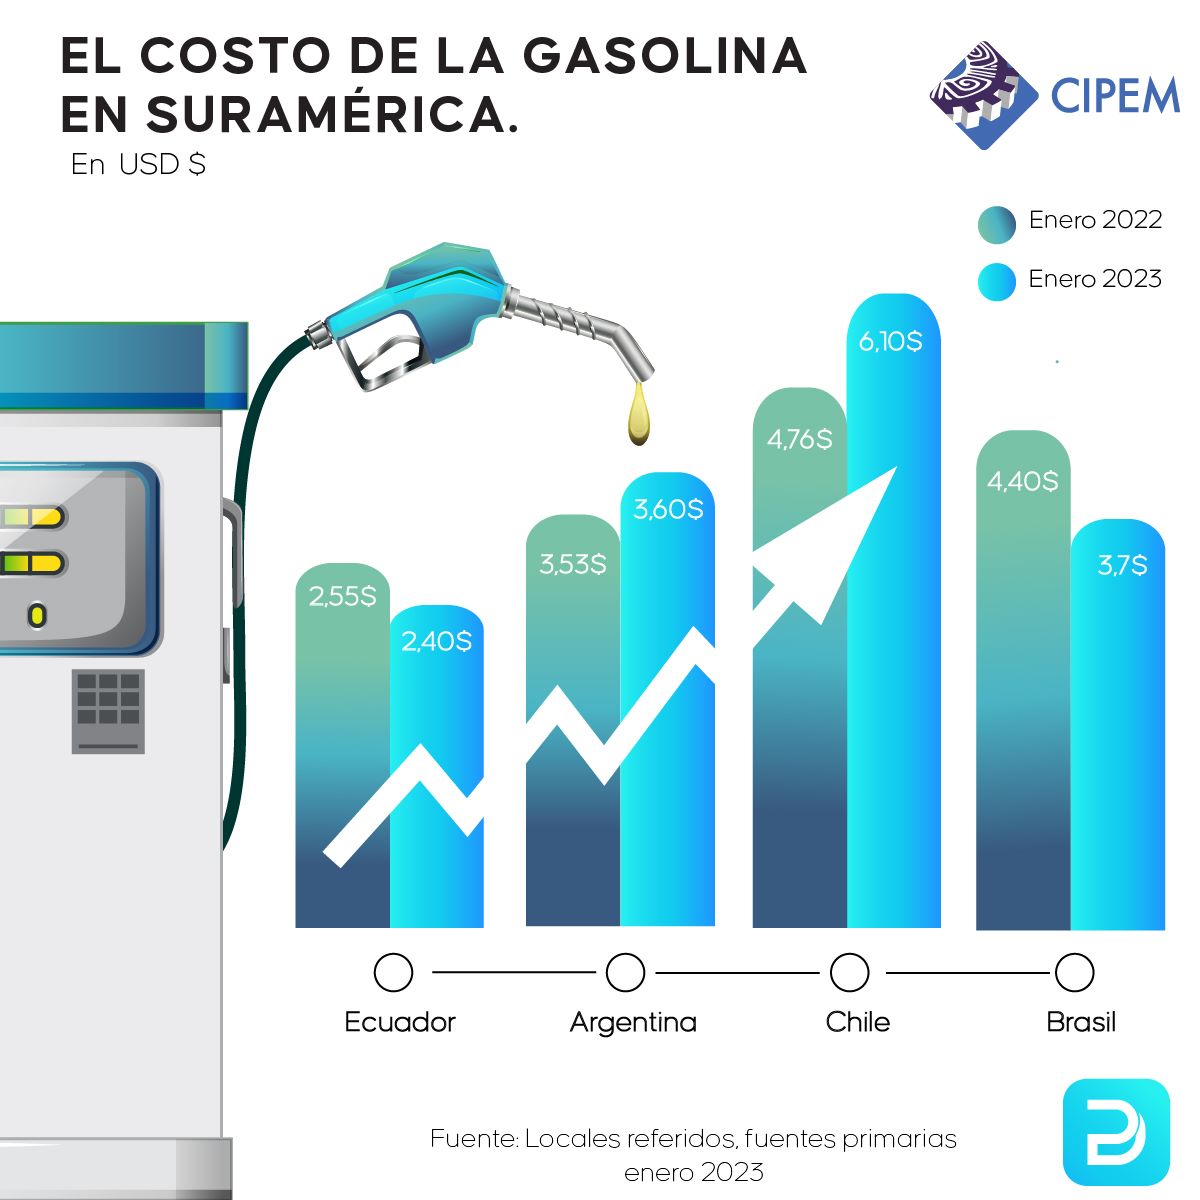 Conoce la diferencia de costos de la gasolina en el inicio de 2022 y en diciembre del mismo año en Suramérica. ⛽️

Más en👉🏻: datapais.com